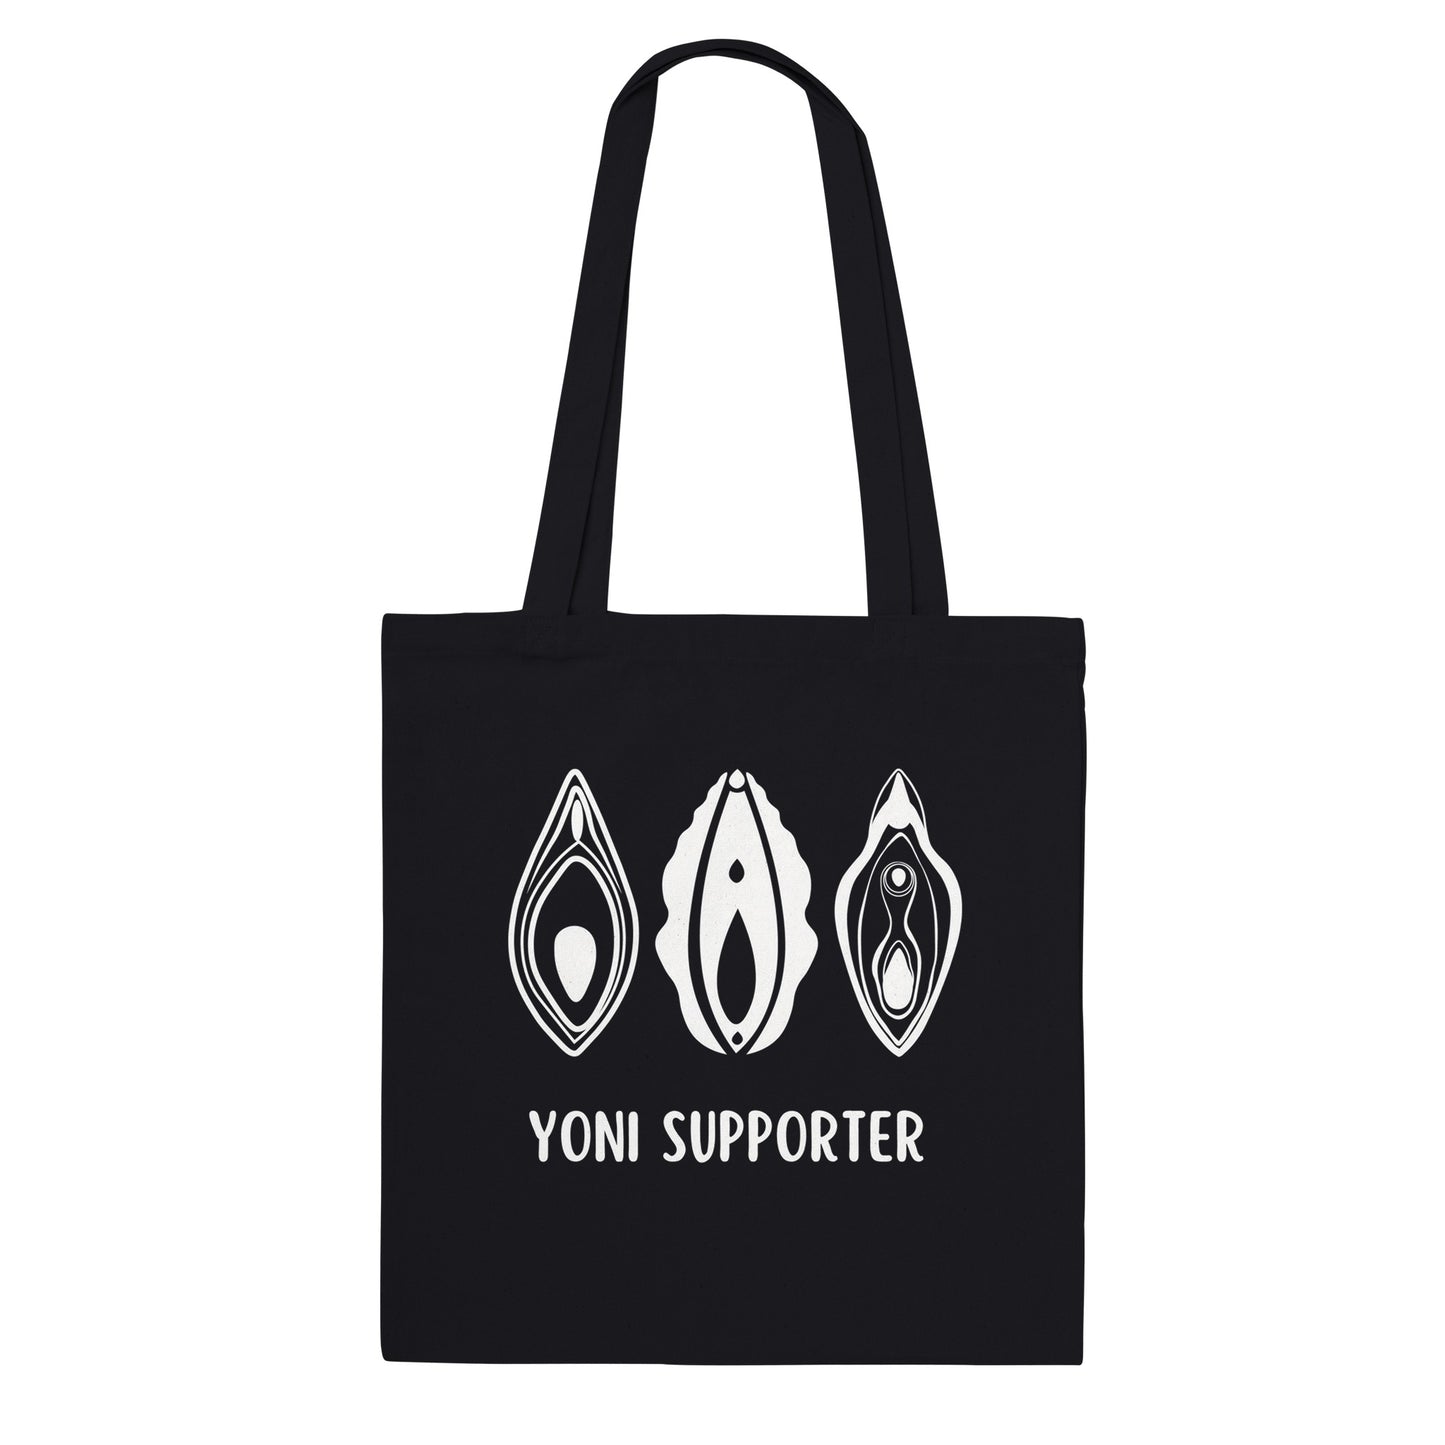 "YONI SUPPORTER" -Tragetasche (40 x 40 cm), Tote Bag, Einkaufstasche, Beutel, 3 x Yoni Motiv - verschiedene Farben verfügbar 🌸 Yoni Motiv Yoniart Yoni Art